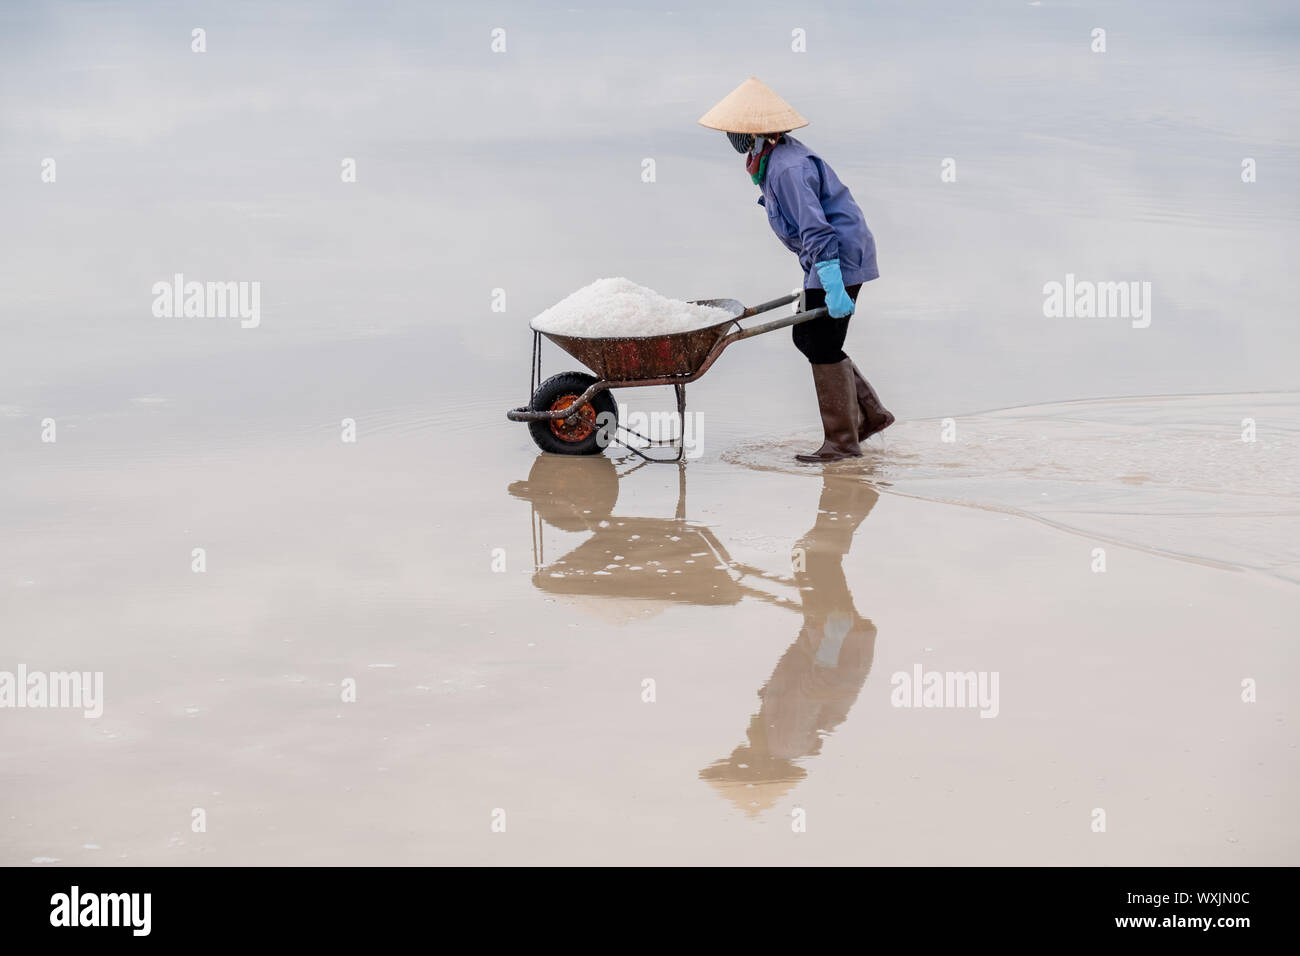 Paludier poussant une brouette remplie de sel, Nha Trang, Viêt Nam Banque D'Images